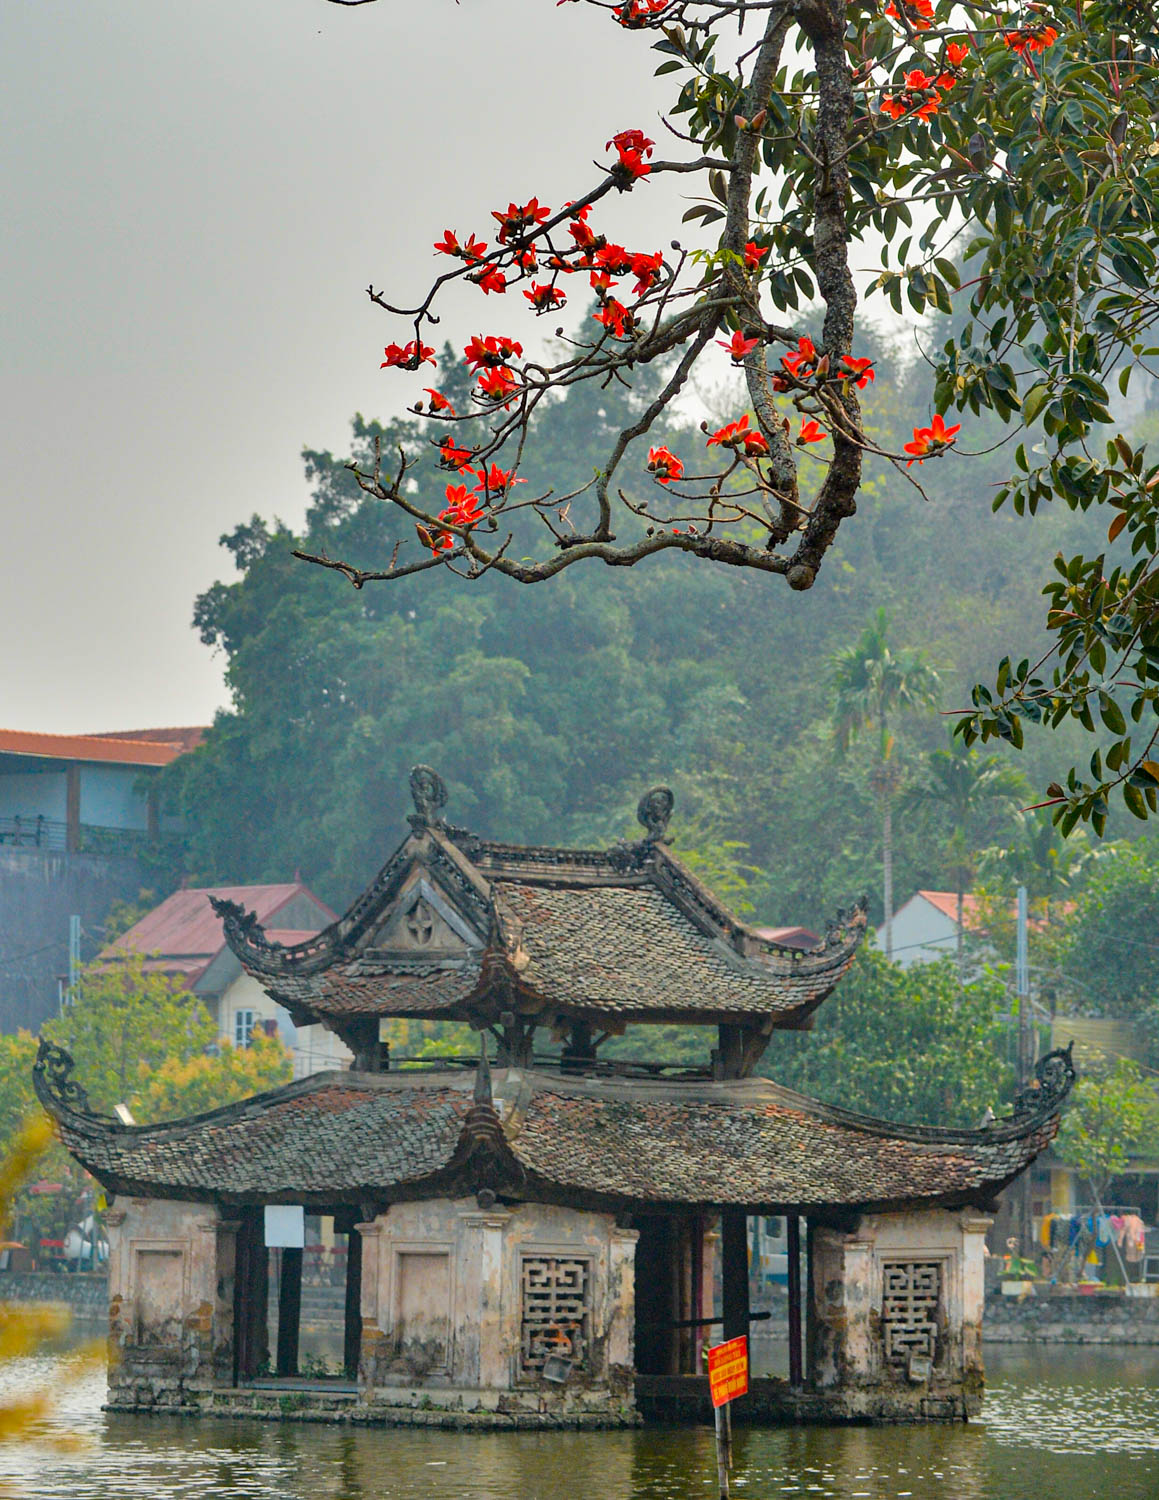 Ngắm hoa gạo nở đỏ rực bên trong ngôi chùa nghìn năm tuổi ở Hà Nội  - Ảnh 7.